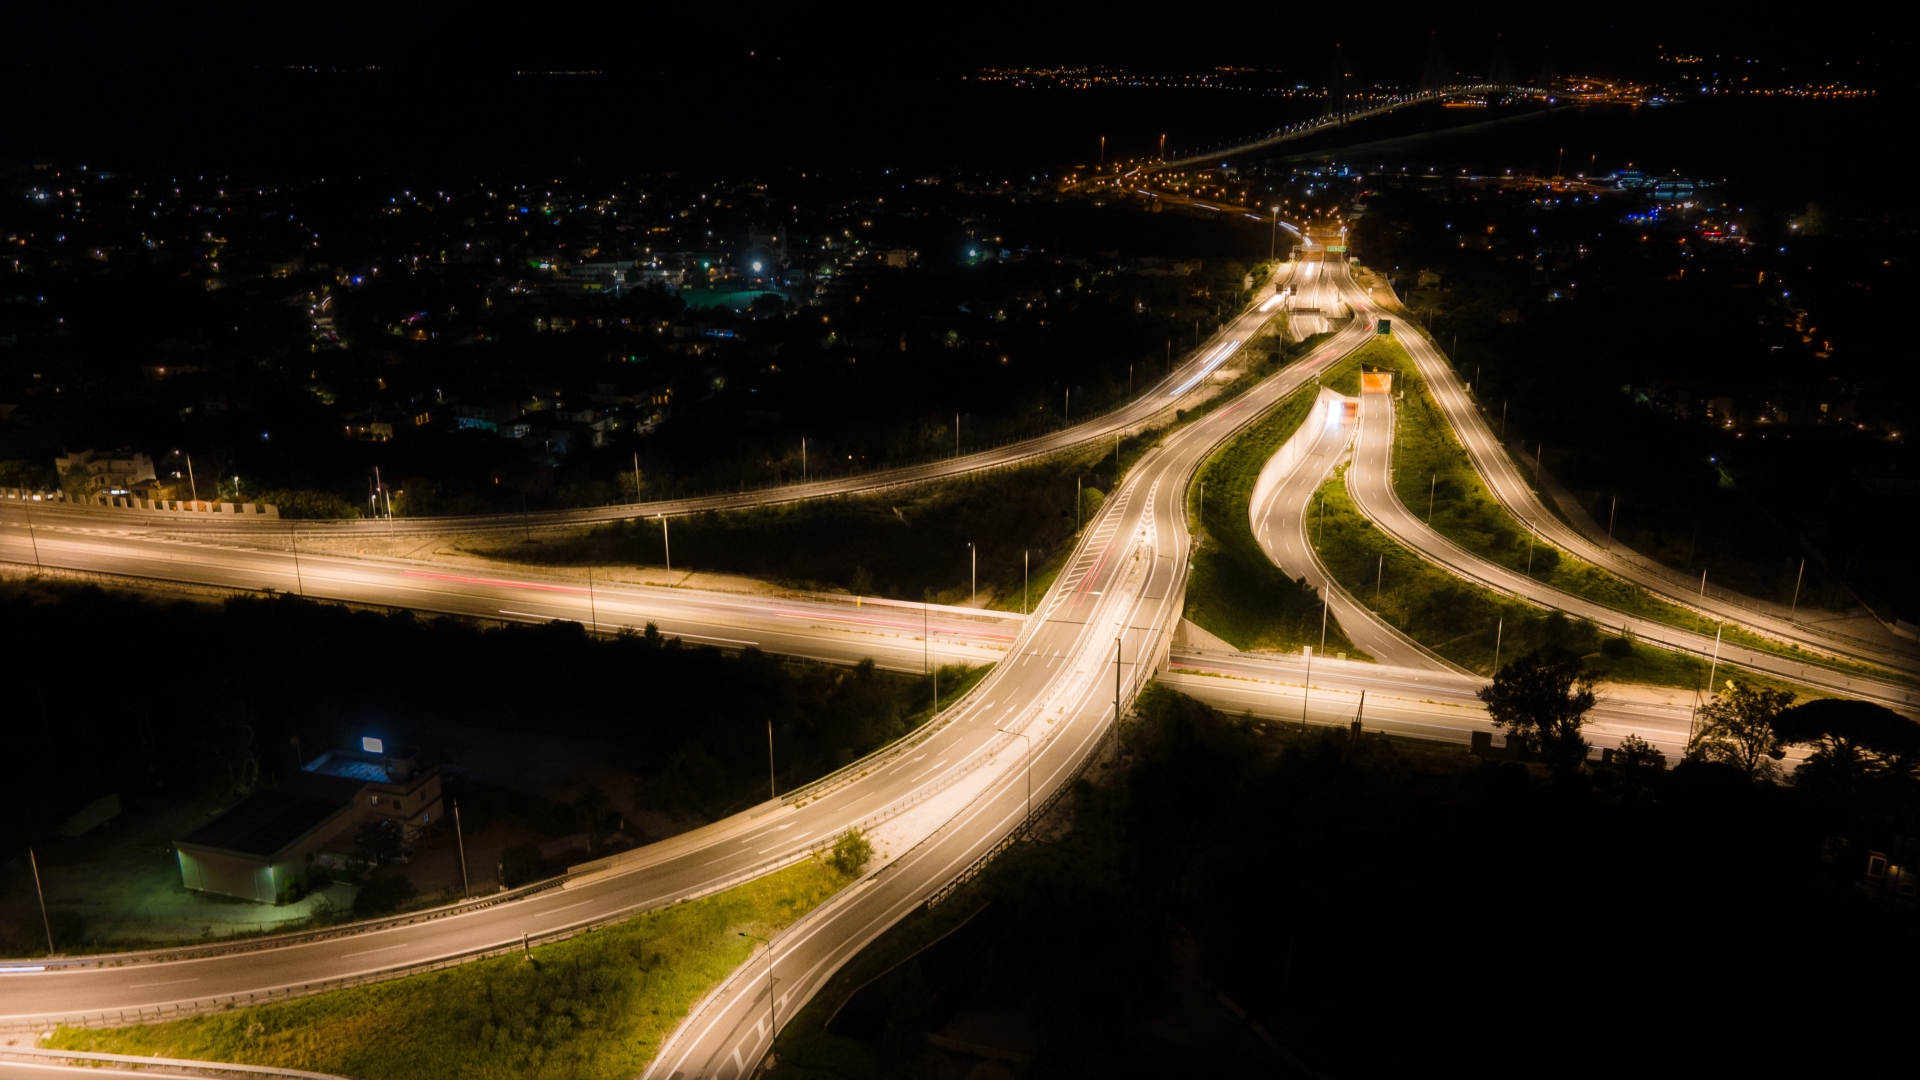 ΟΛΥΜΠΙΑ ΟΔΟΣ: «Έξυπνος» φωτισμός στον αυτοκινητόδρομο Ελευσίνα- Κόρινθος – Πάτρα (ΒΙΝΤΕΟ)